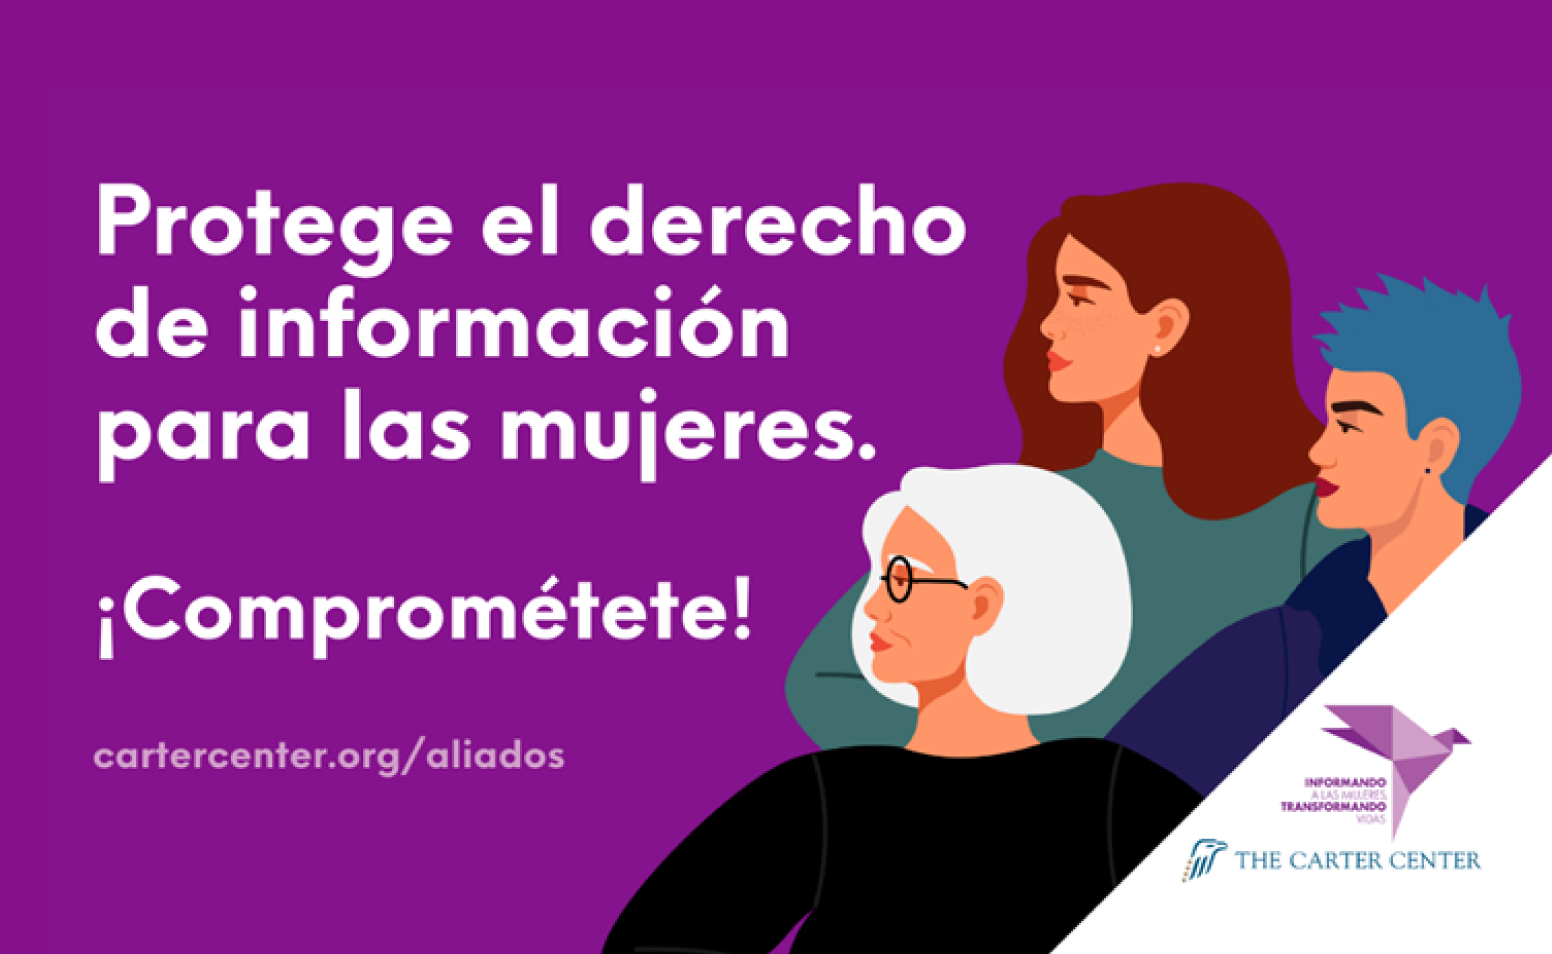 Ilustración de mujeres con mensaje: "Protege el derecho a la información de las mujeres, ¡Comprométete!"